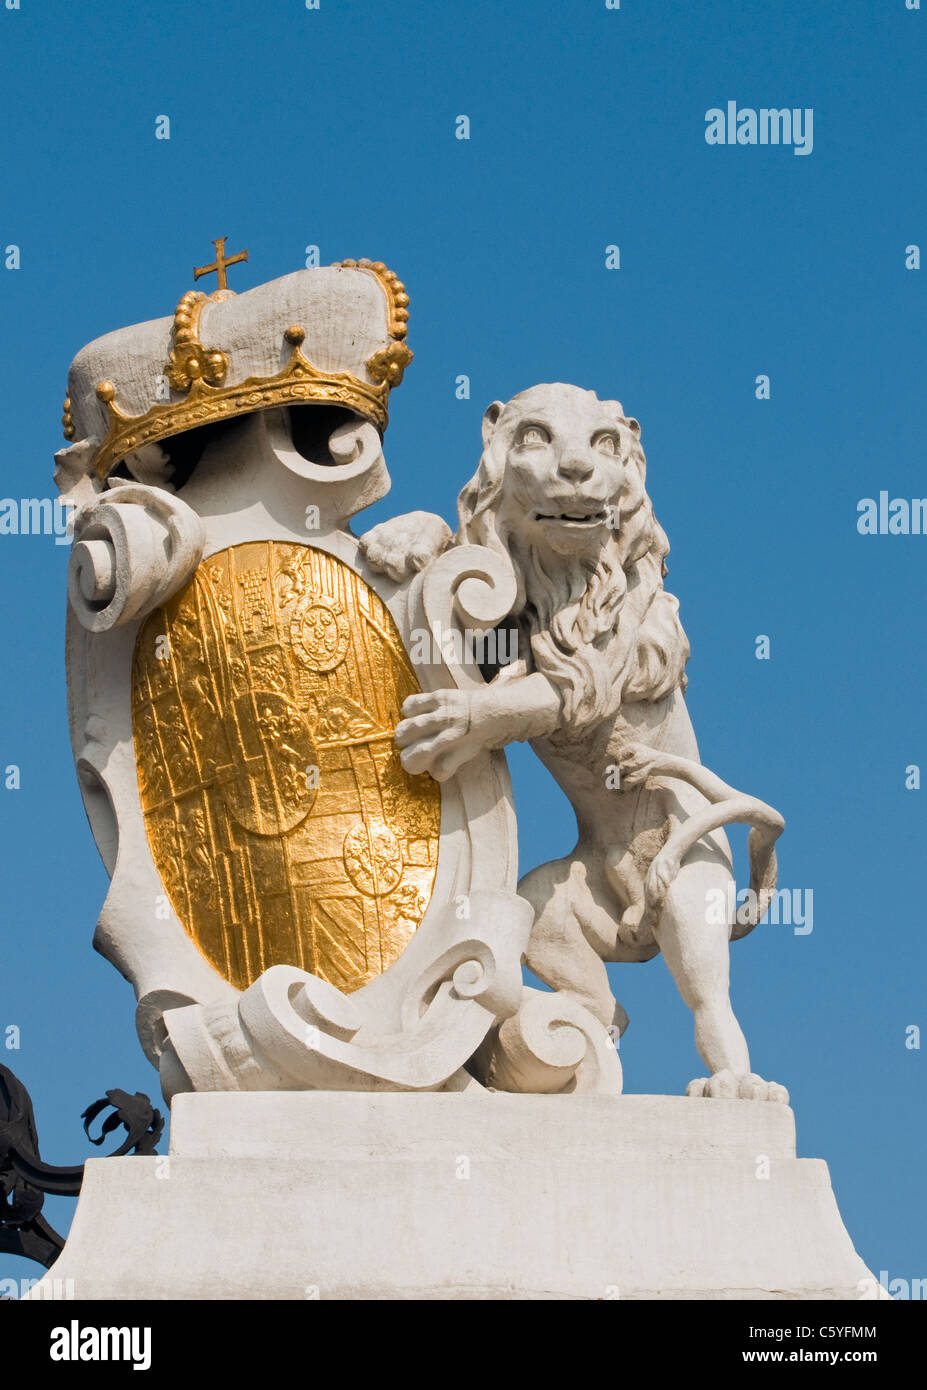 Statue De Lion Avec Le Blason Des Armoiries La Porte Du Chateau Belvedere Vienne Wien Autriche Photo Stock Alamy